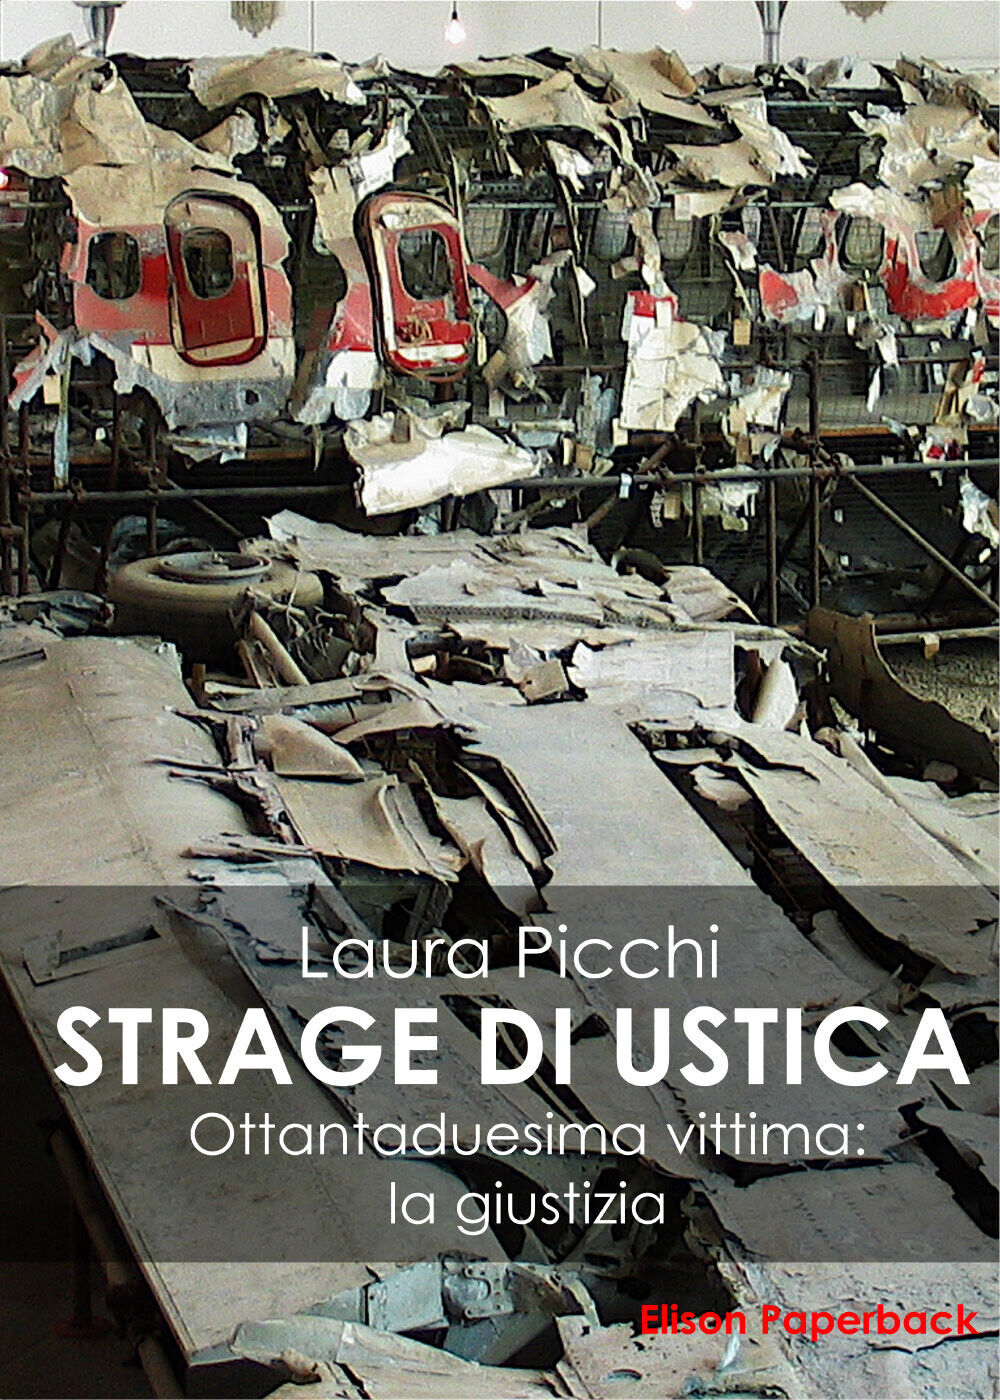 La strage di Ustica, Laura Picchi,  2020,  Elison Paperback  libro usato